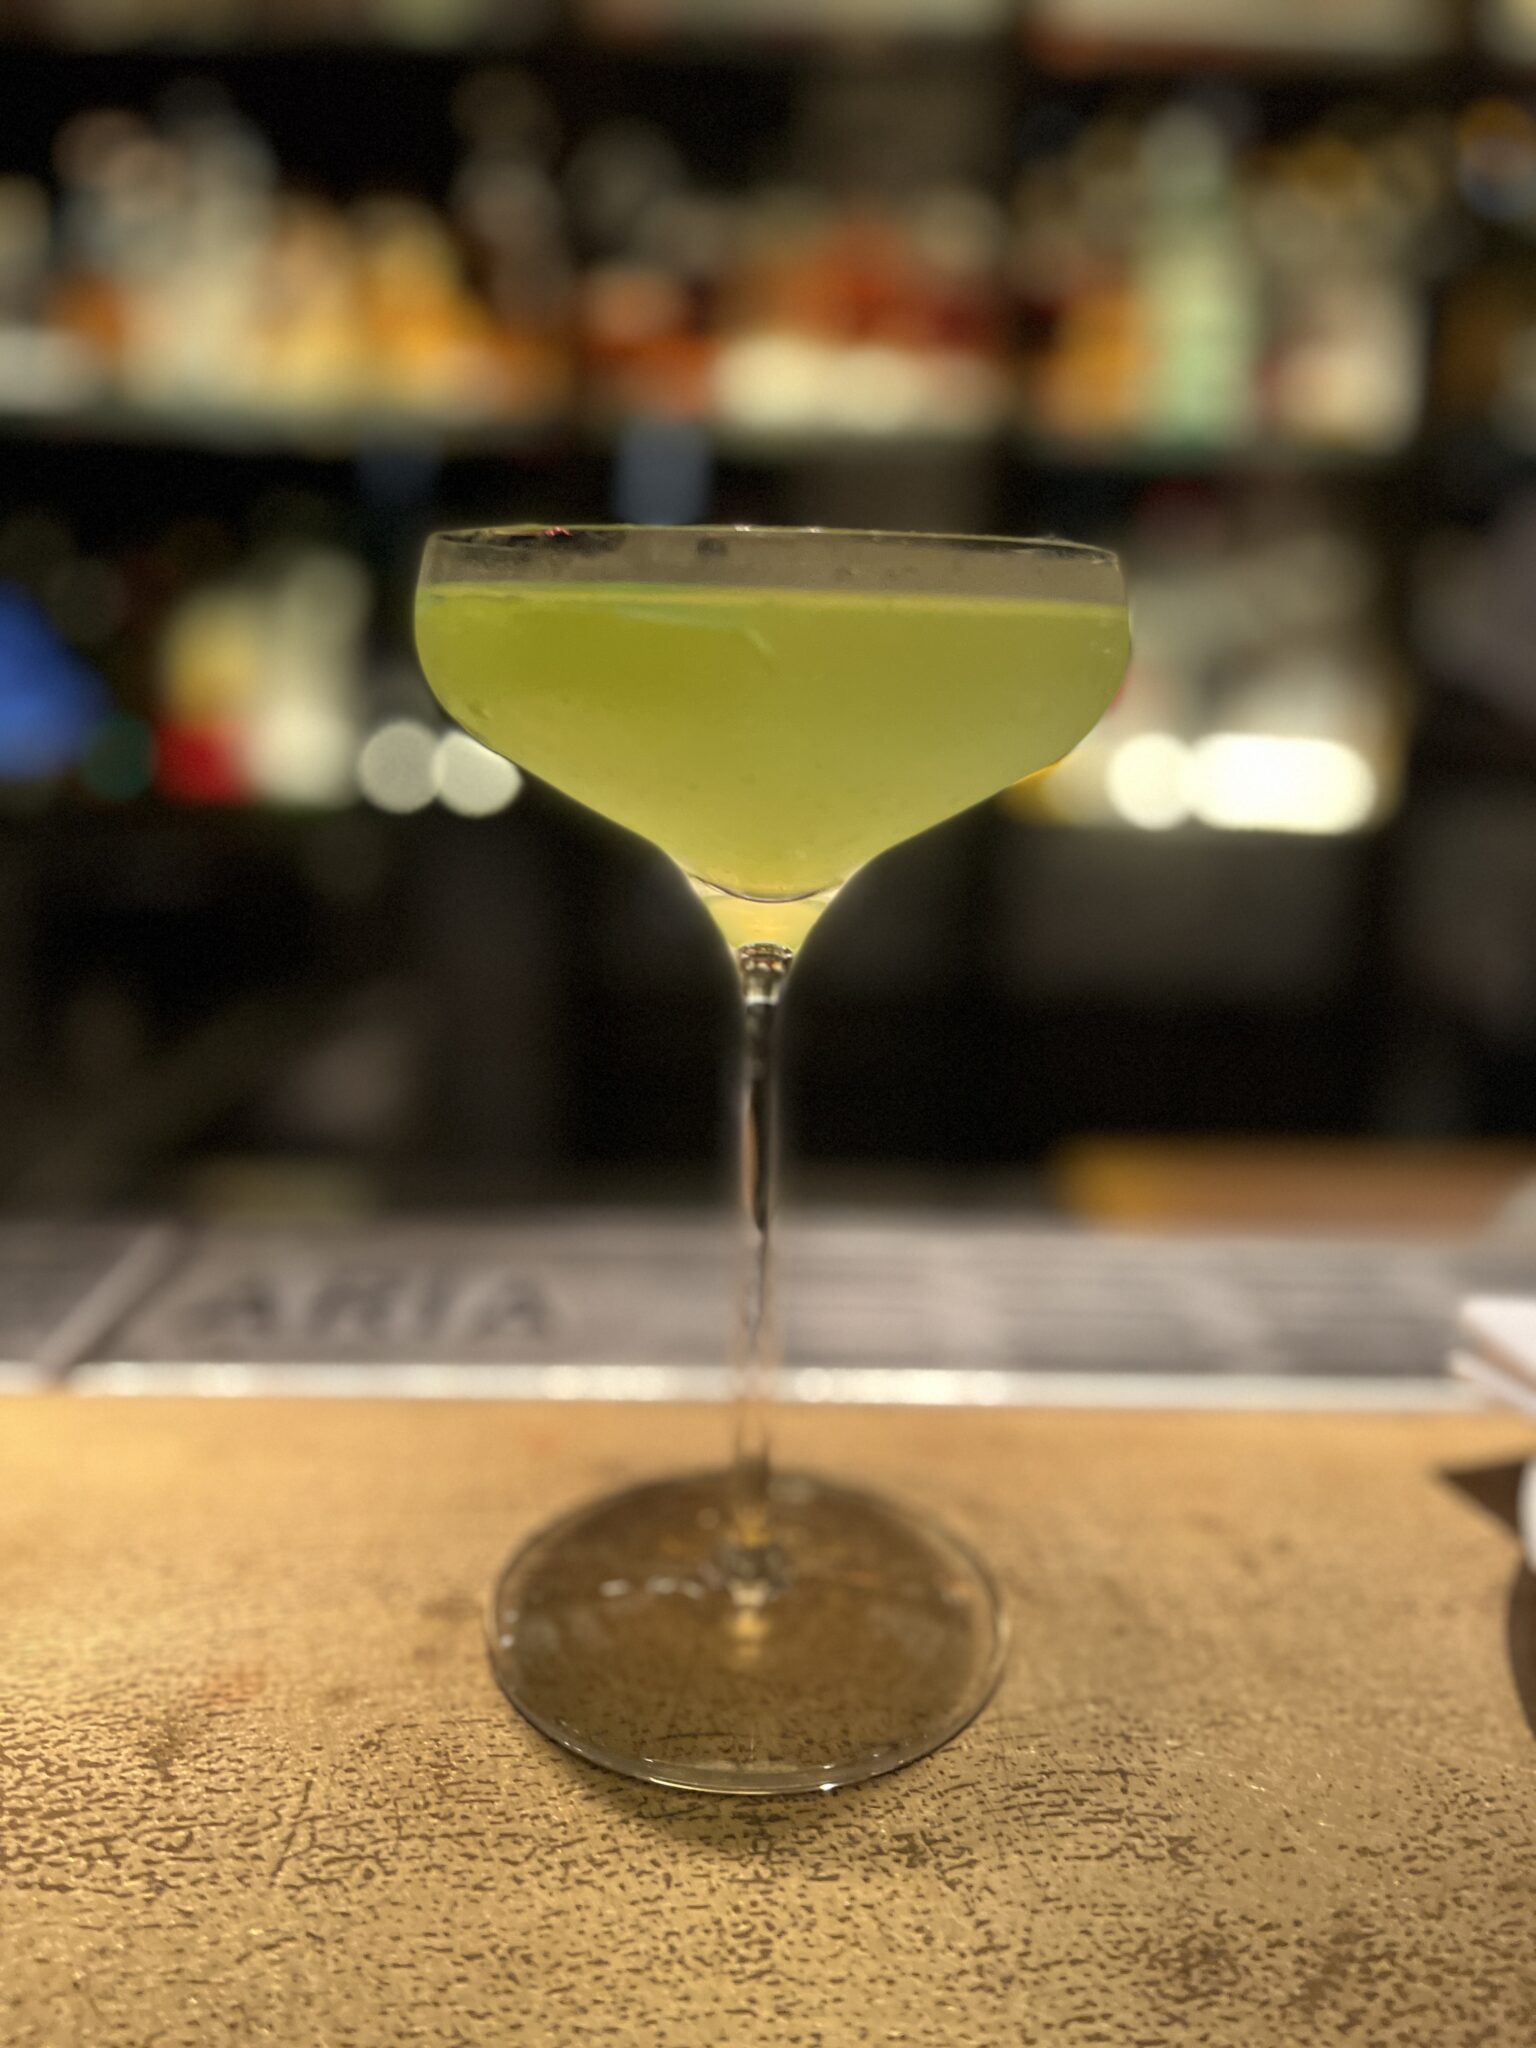 Ein schöner Drink mit gelblich grüner Farbe in einem eleganten Glas, das beschlagen ist